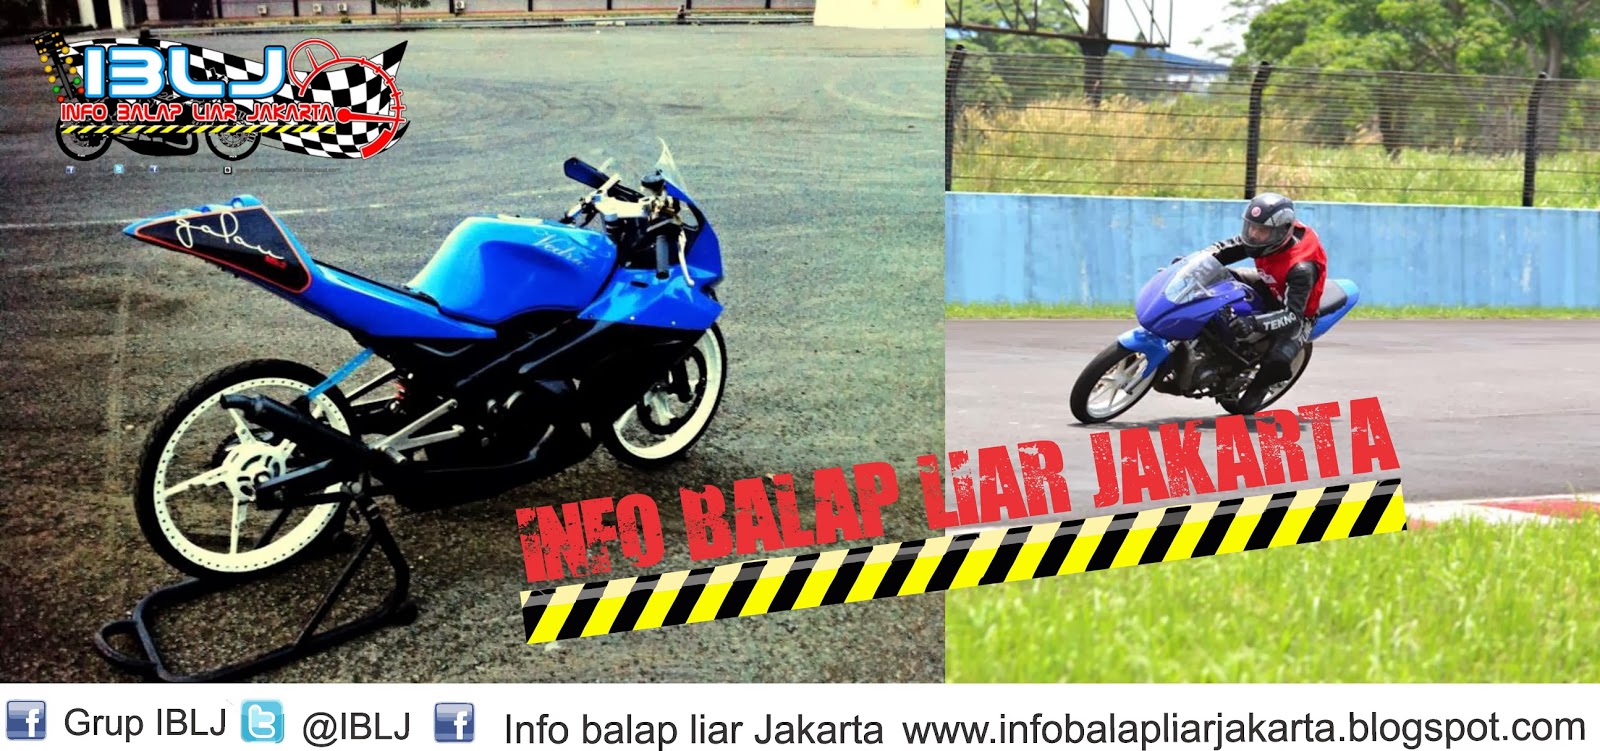 Jakarta Ninja Tekno Tuner Cukup Satu Mesin Untuk Drag Dan